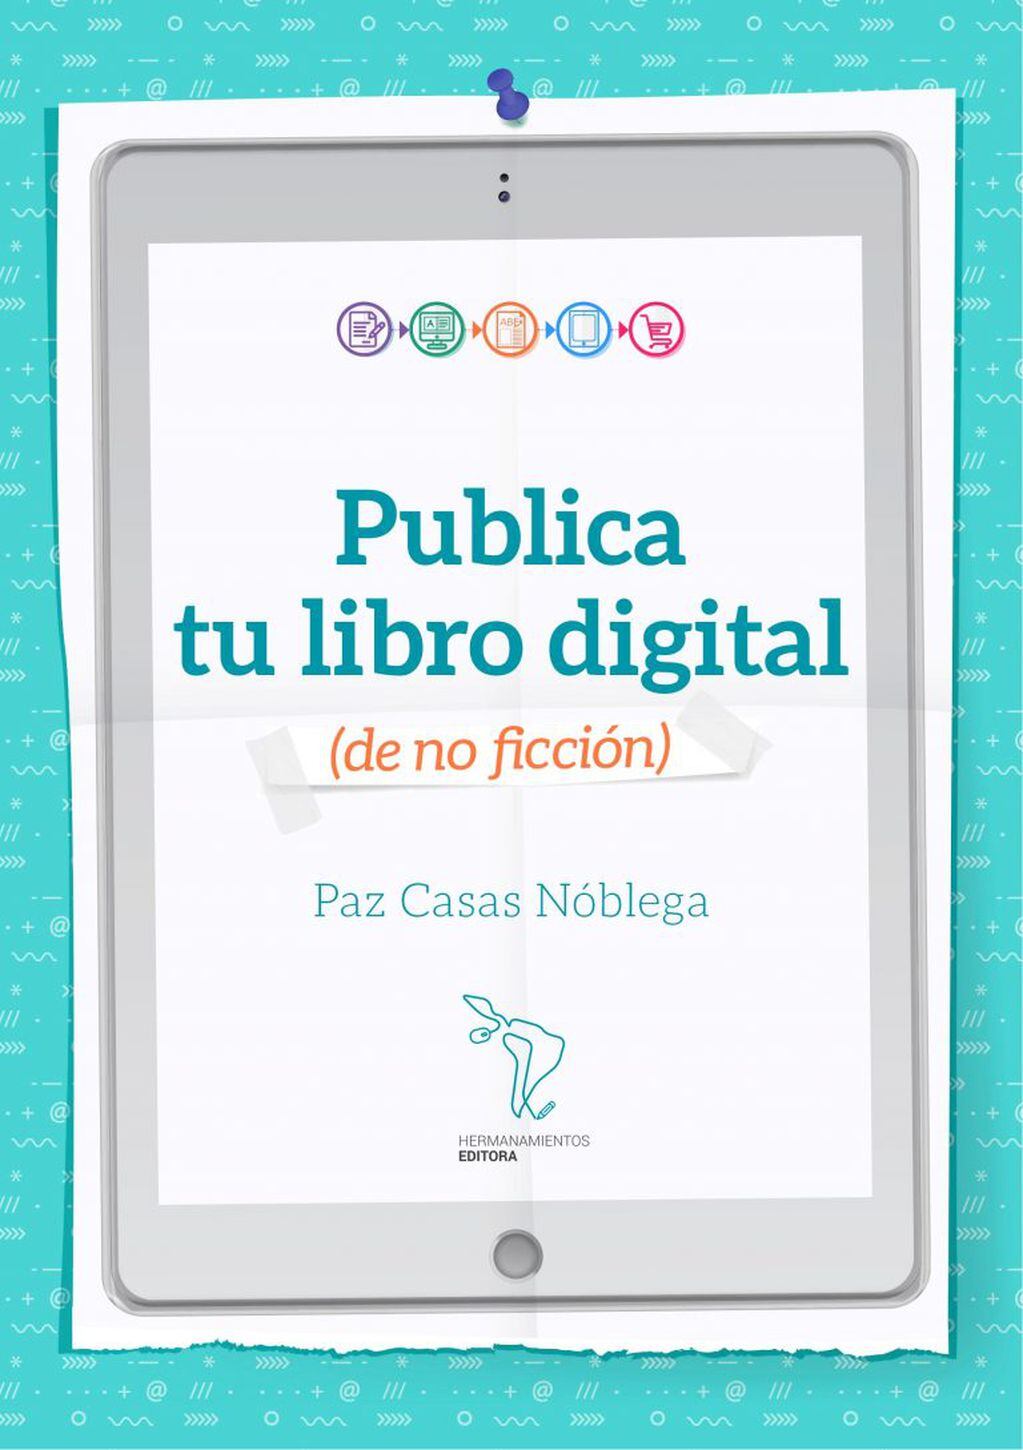 "Publica tu libro digital (de no ficción)"